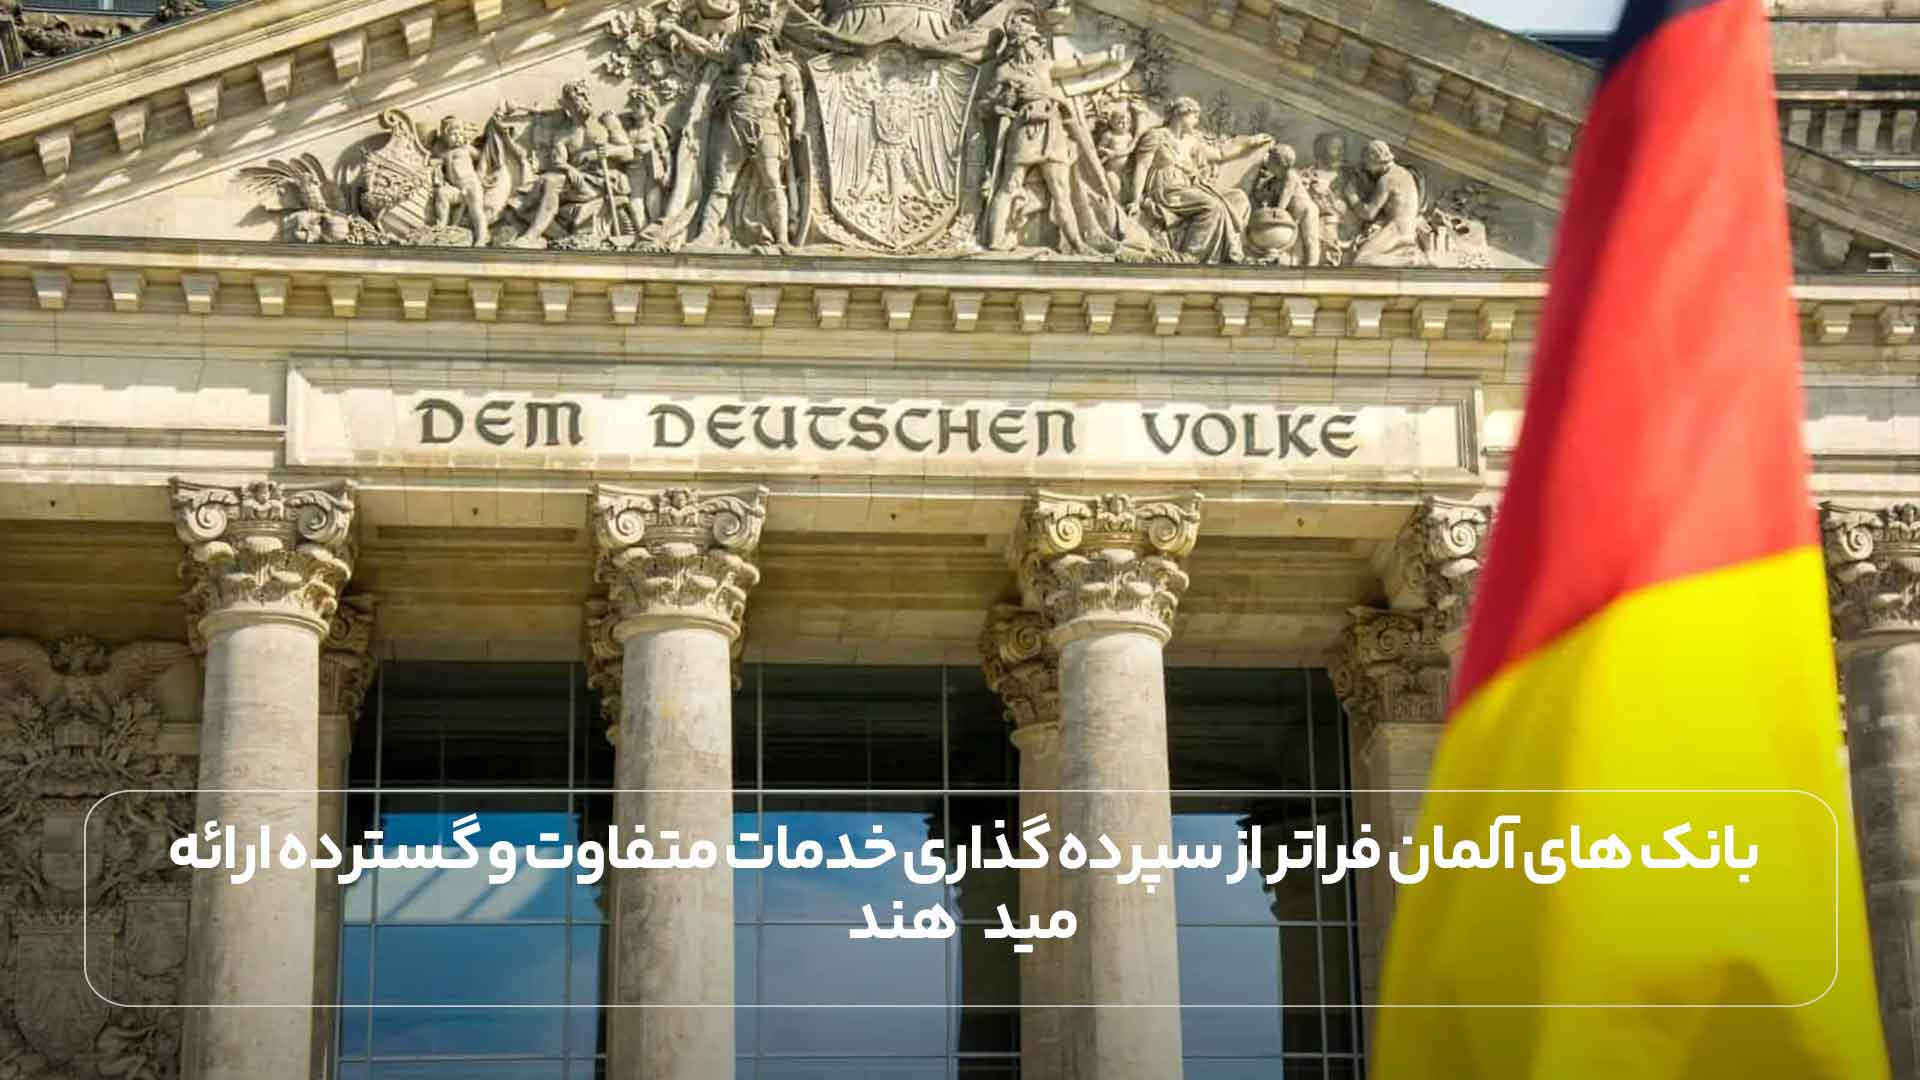 بانک های آلمان فراتر از سپرده گذاری خدمات متفاوت و گسترده ارائه می دهند.